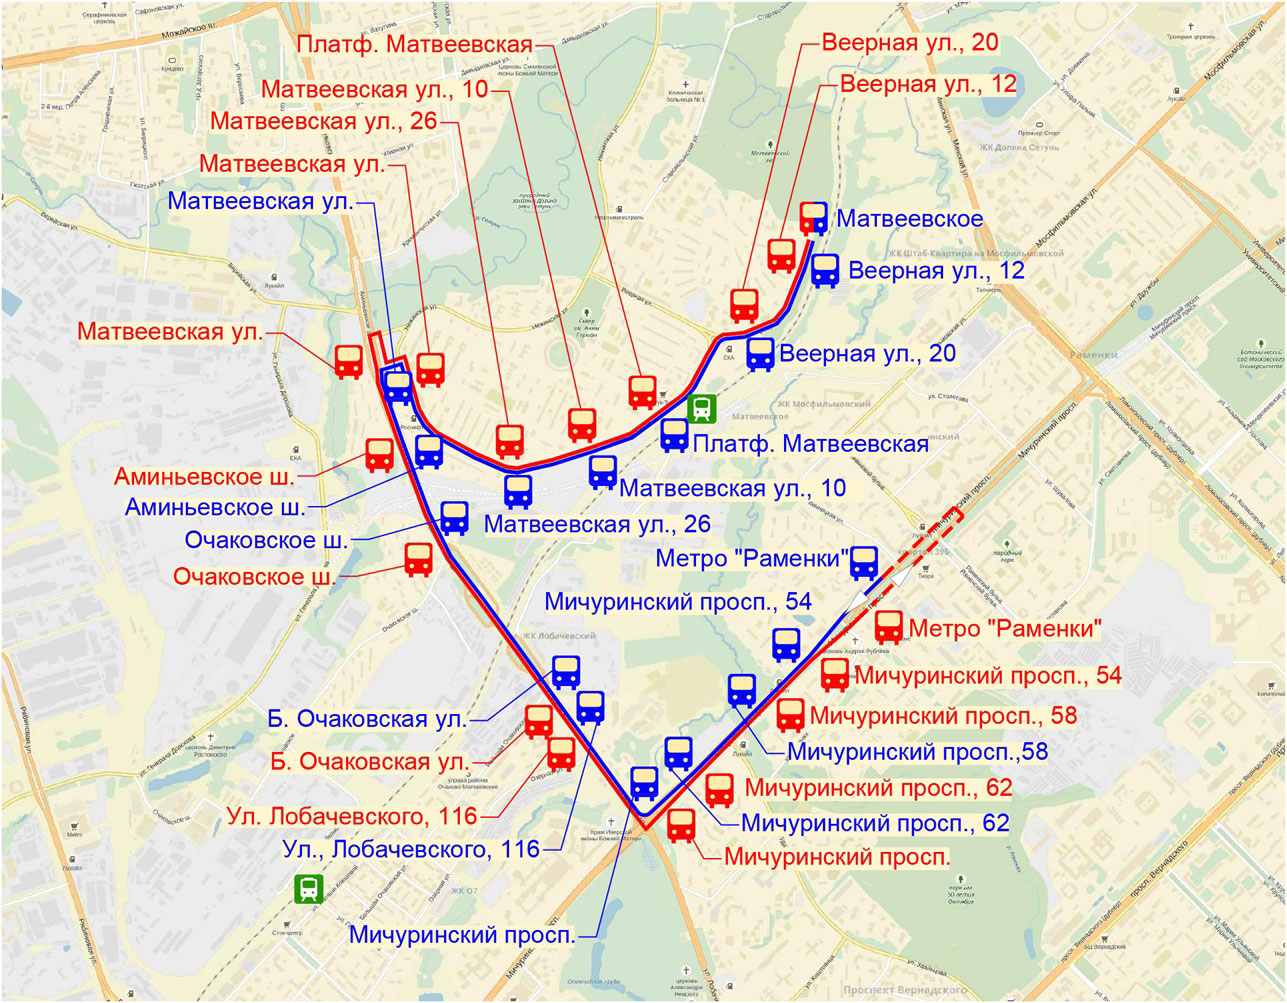 Маршрут автобуса №325 на карте г. Москвы